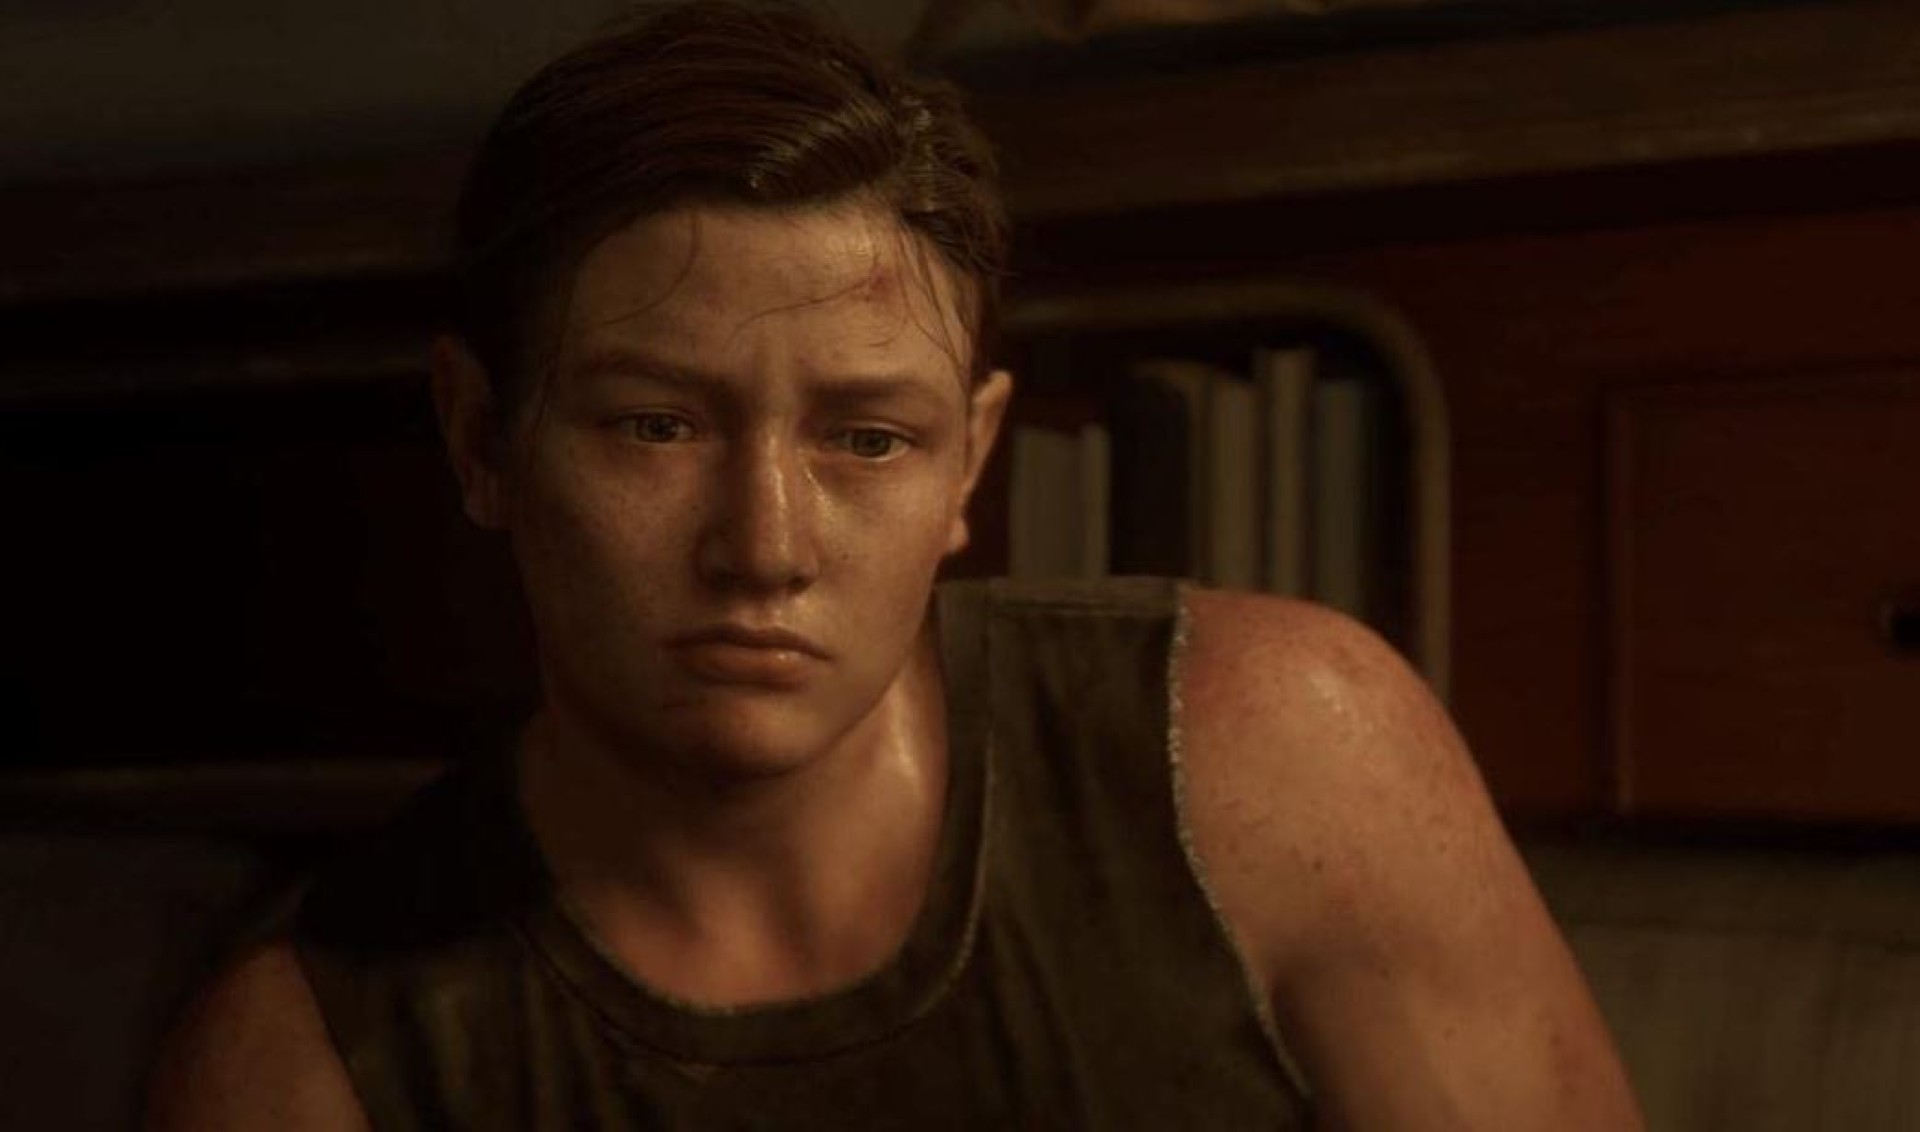 นักแสดงผู้รับบท Abby ในเกม The Last of Us ทุกวันนี้ยังโดนข้อความขู่ทำร้ายอยู่เลย